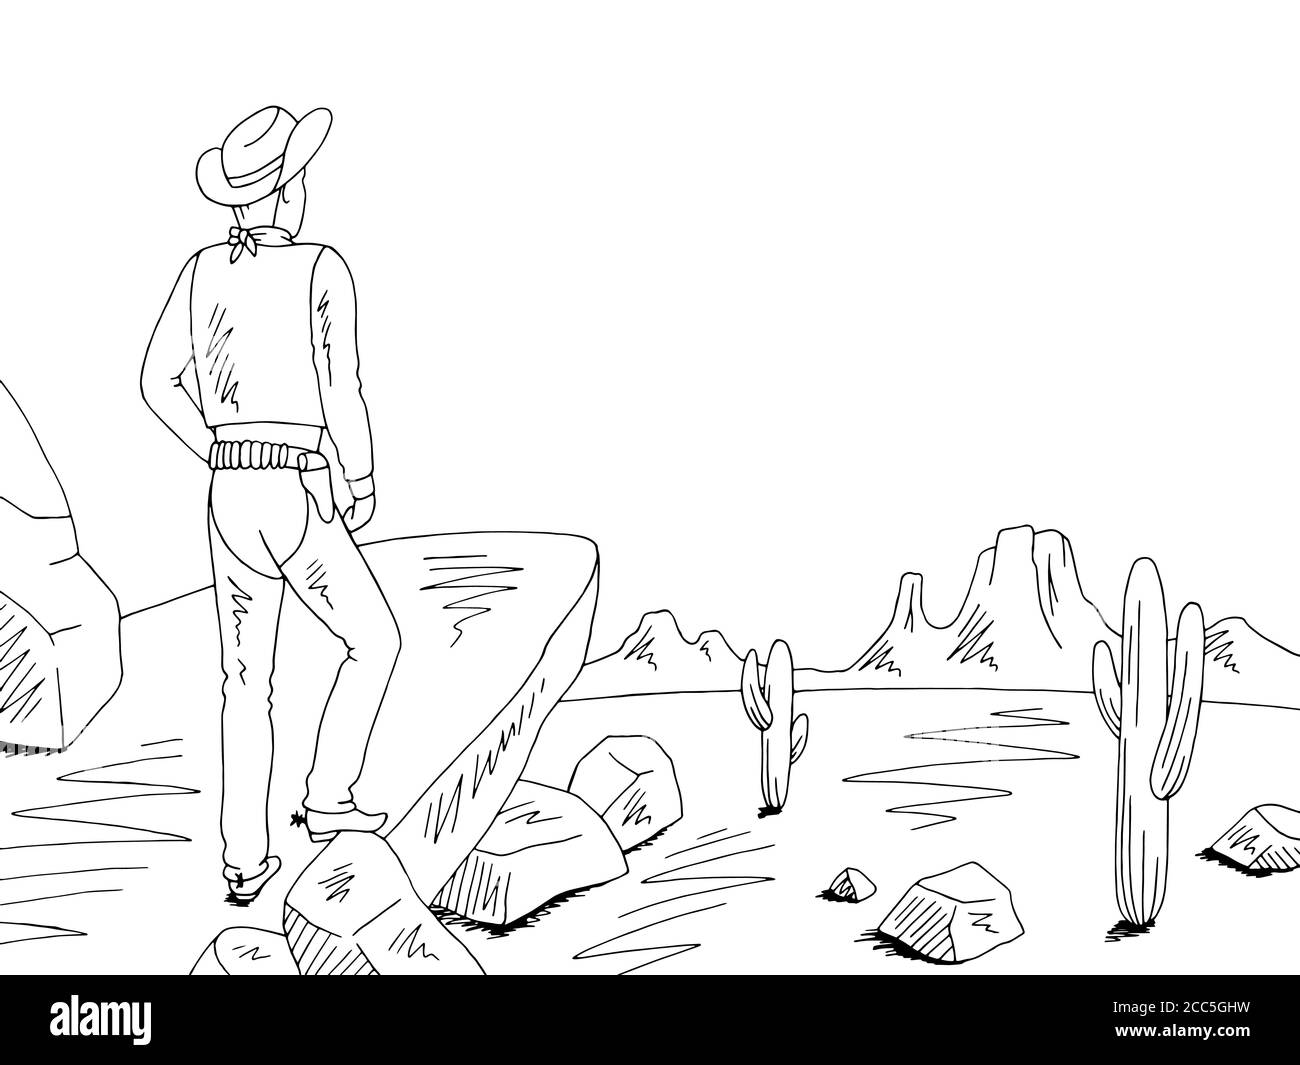 Cowboy steht auf einem Felsen und schaut auf die Prärie Grafik schwarz weiß Wüste Landschaft Skizze Illustration Vektor Stock Vektor